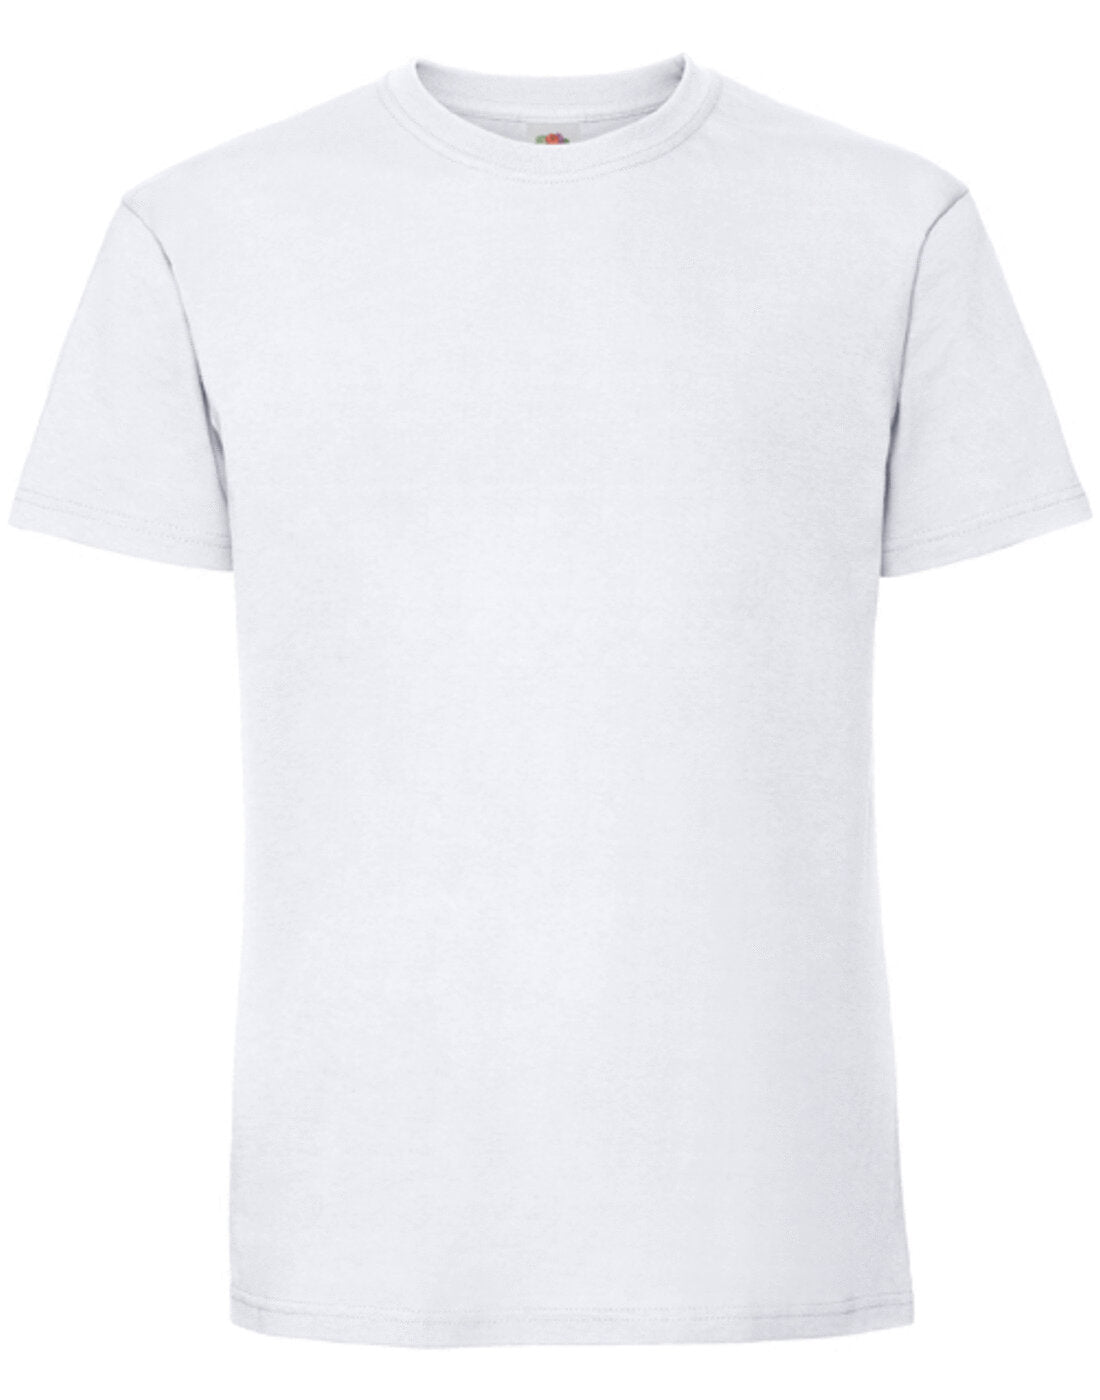 Fruit of the Loom Mens Ringspun Premium T-Shirt - White